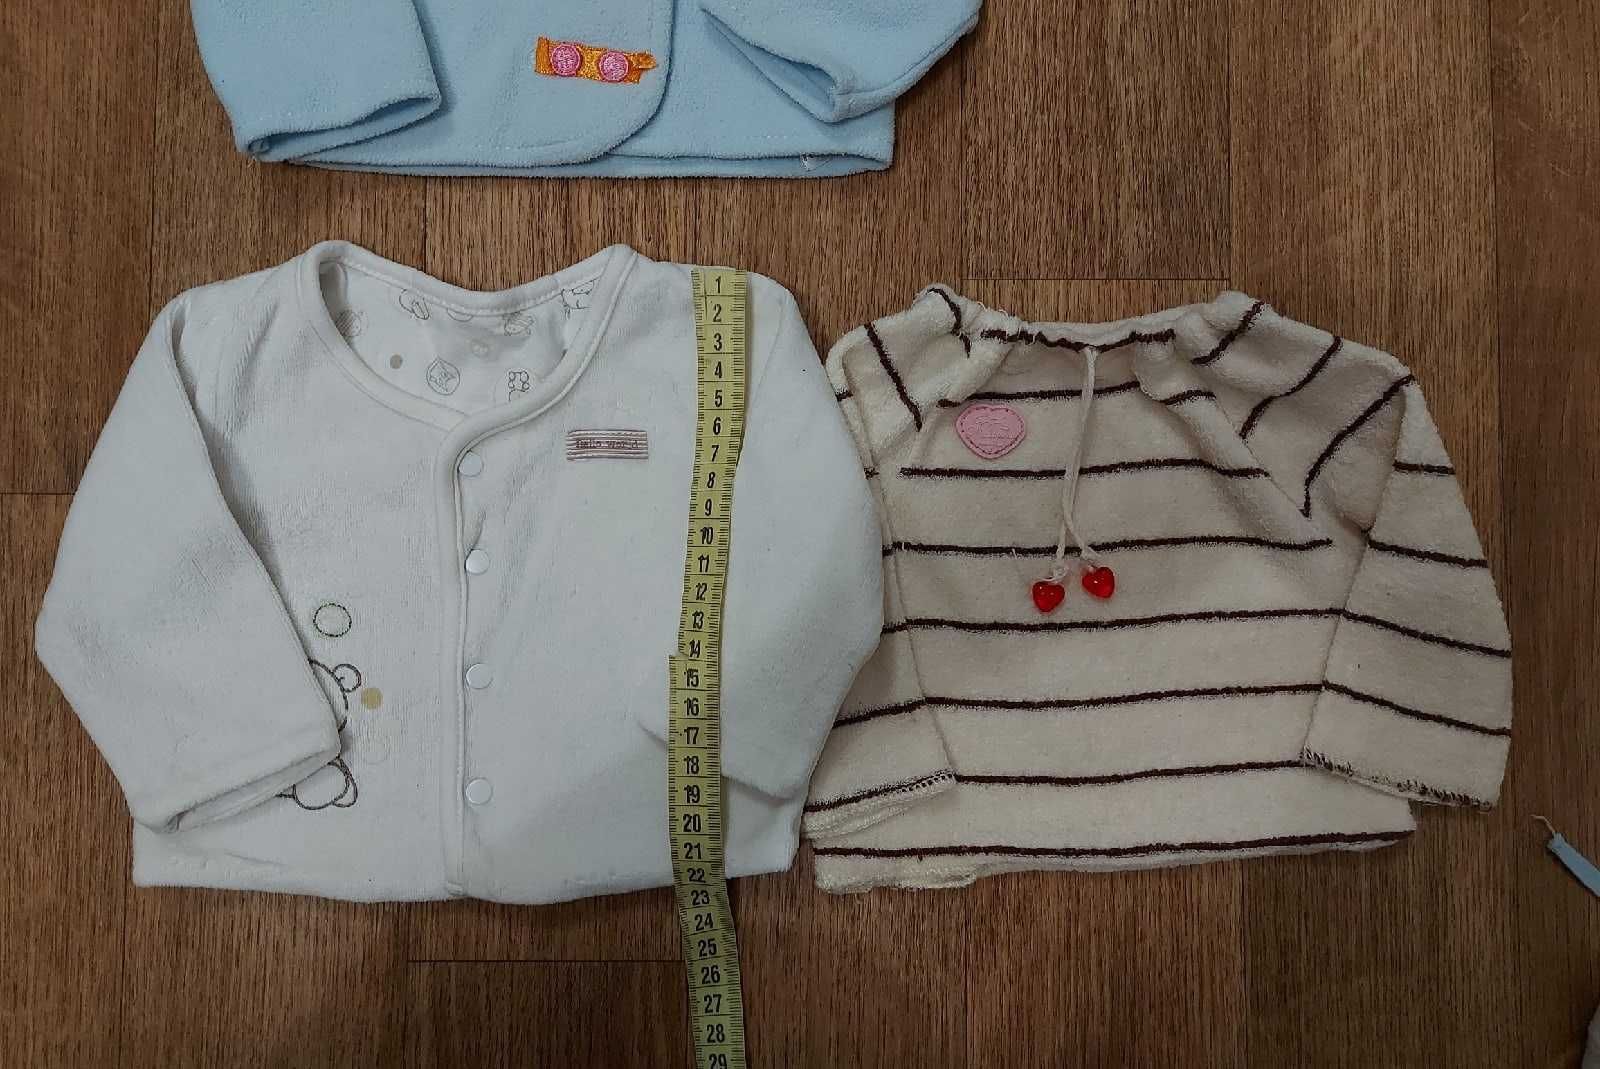 Лот одежды Для малыша 0-3 или Куклы набор Одежды Салли Запф Анабель